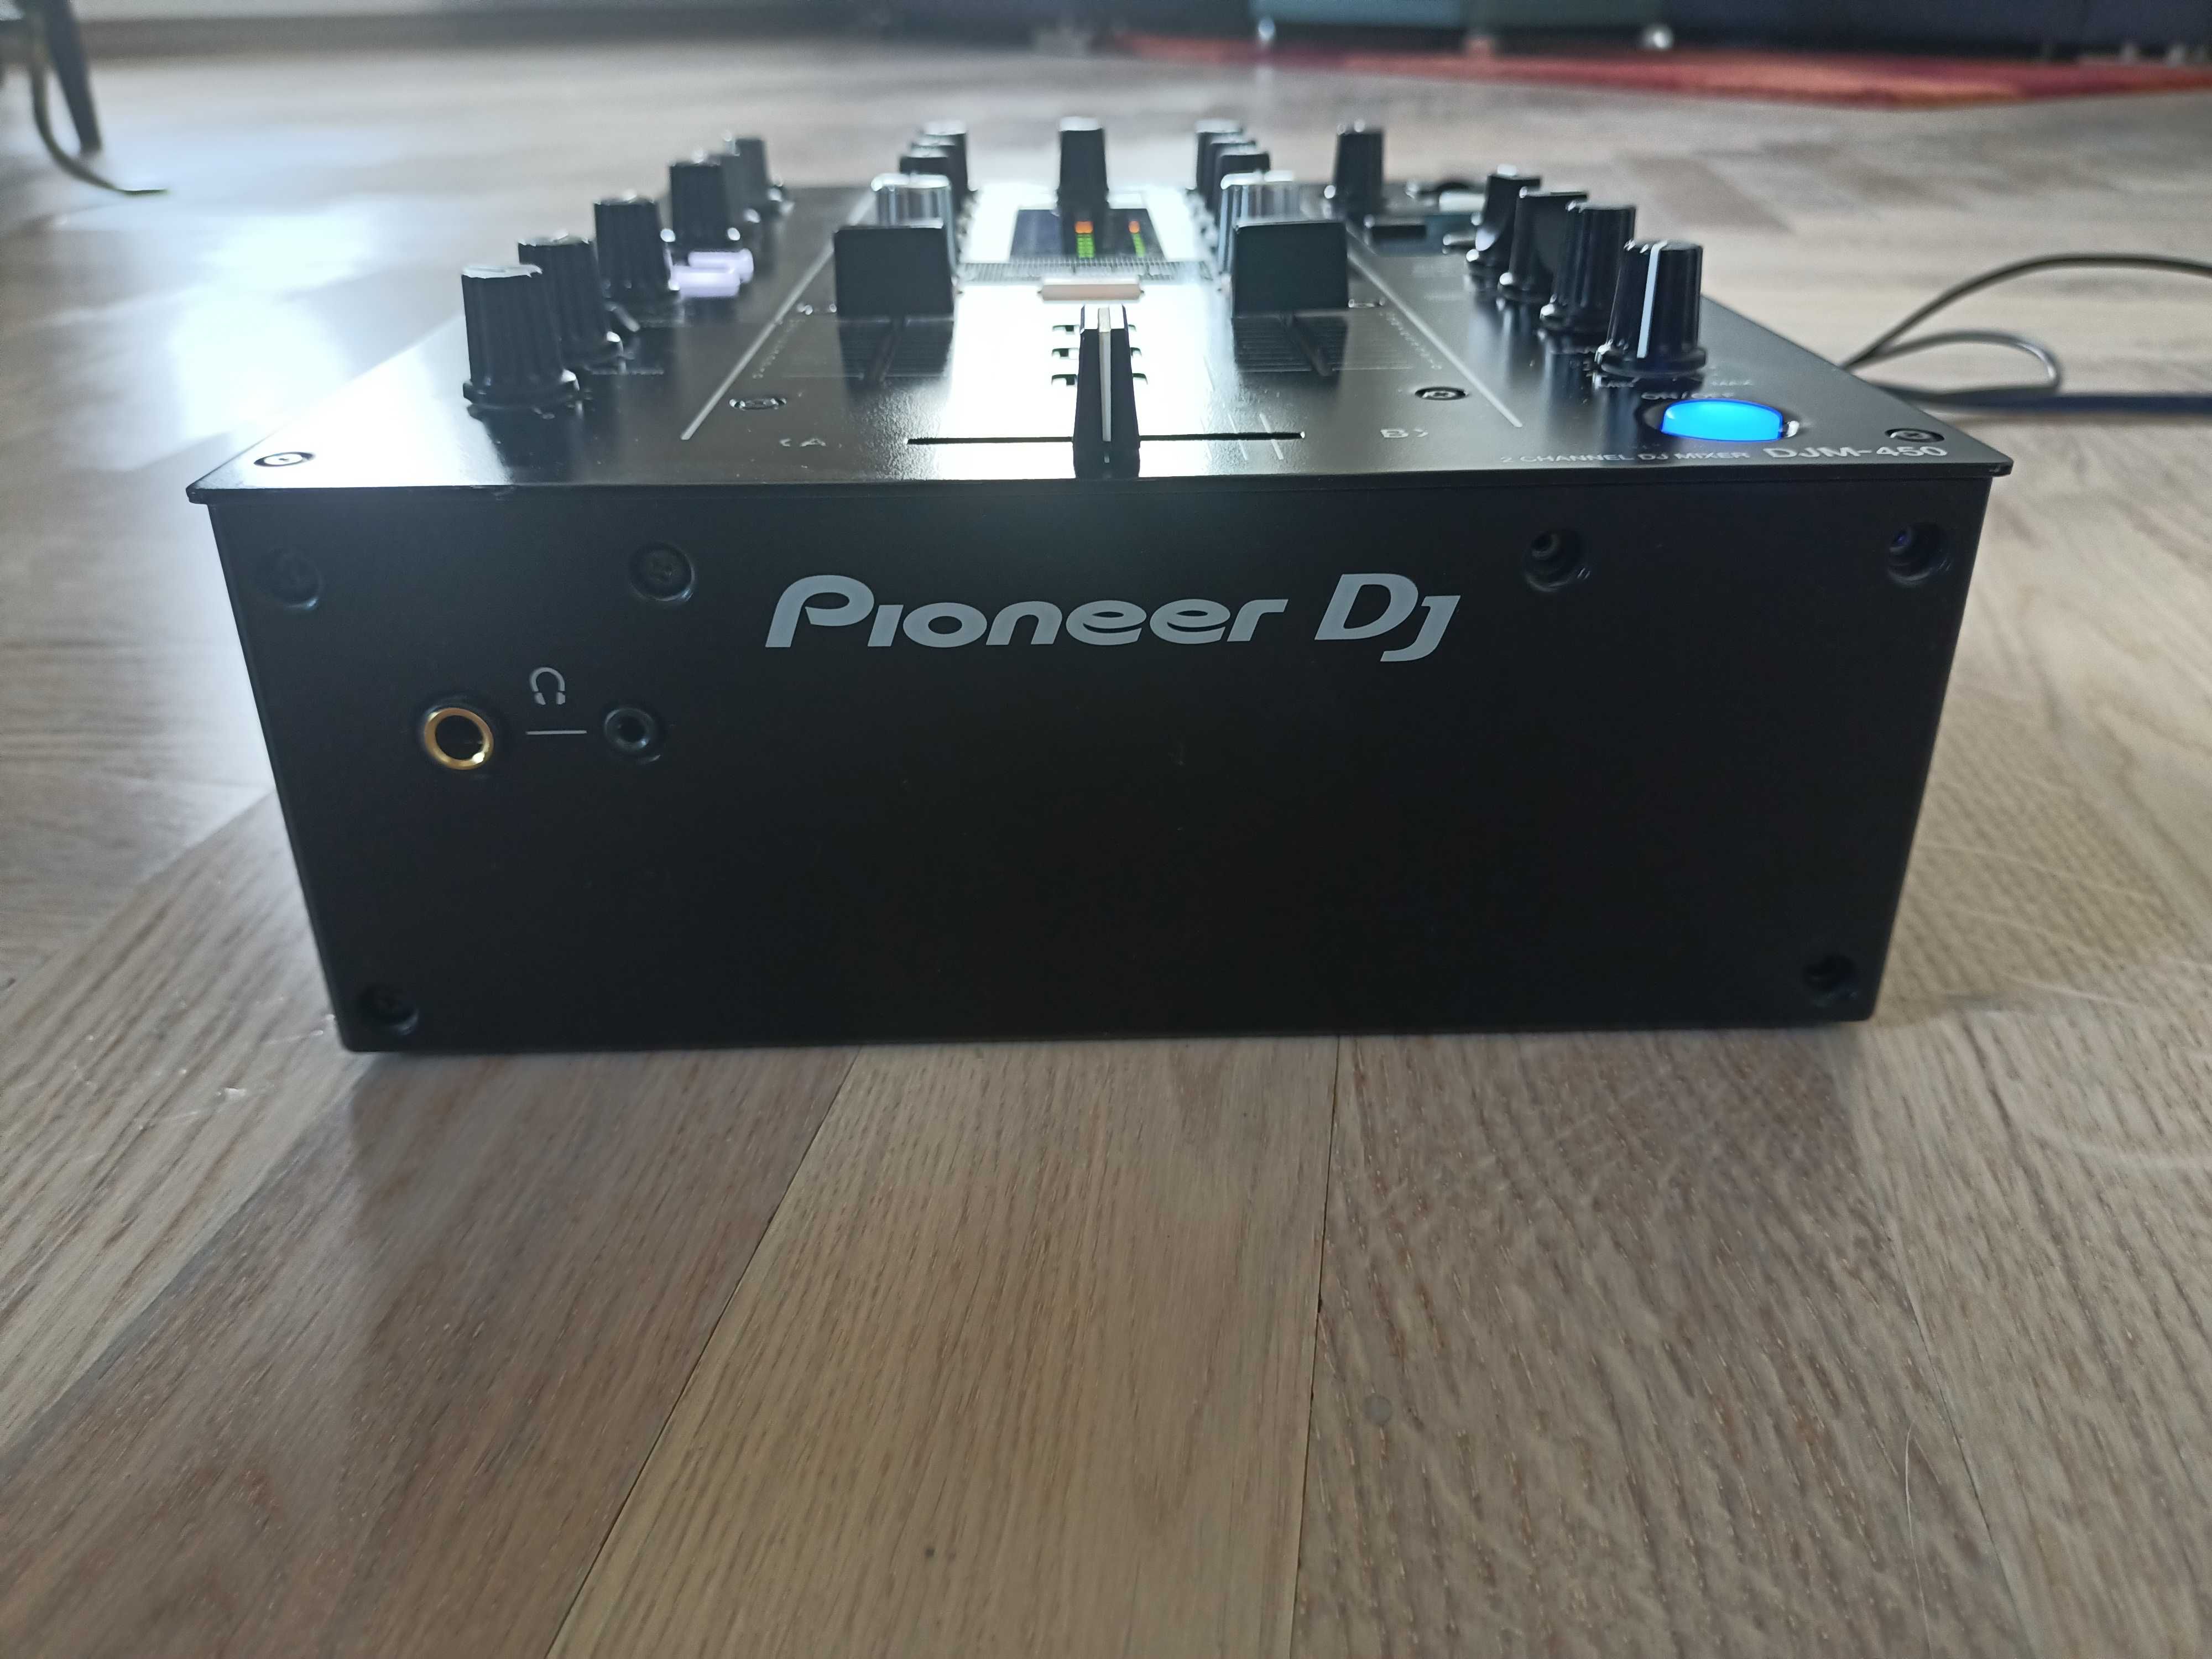 Pioneer Djm 450 mixer.